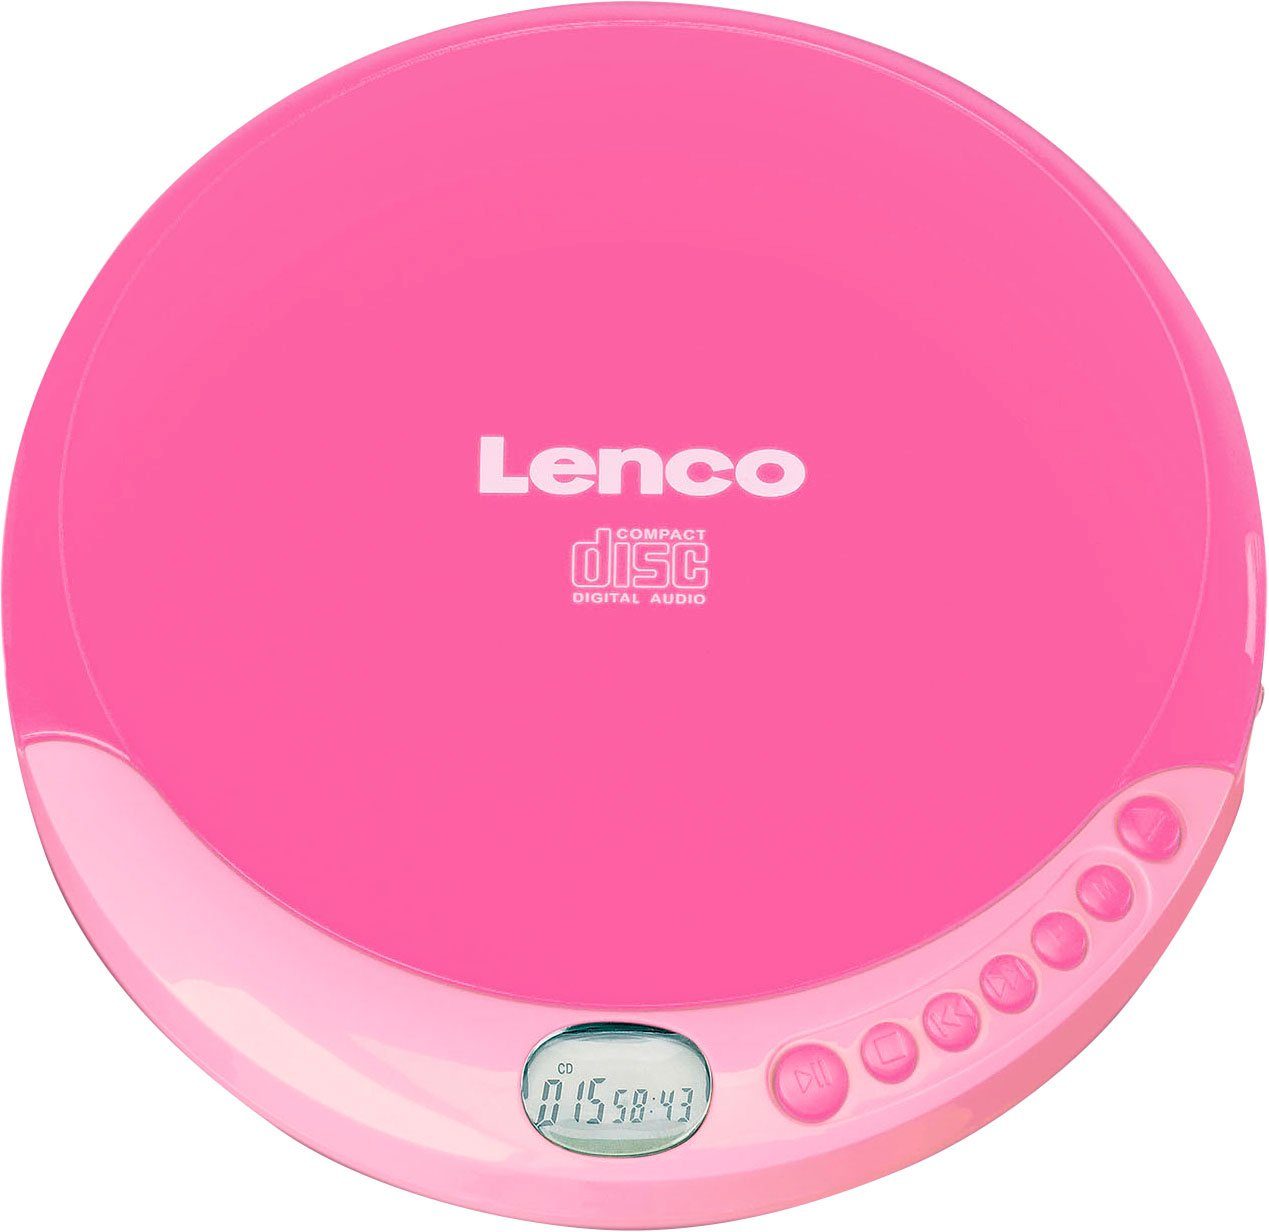 CD-Player CD-011 Lenco rosa